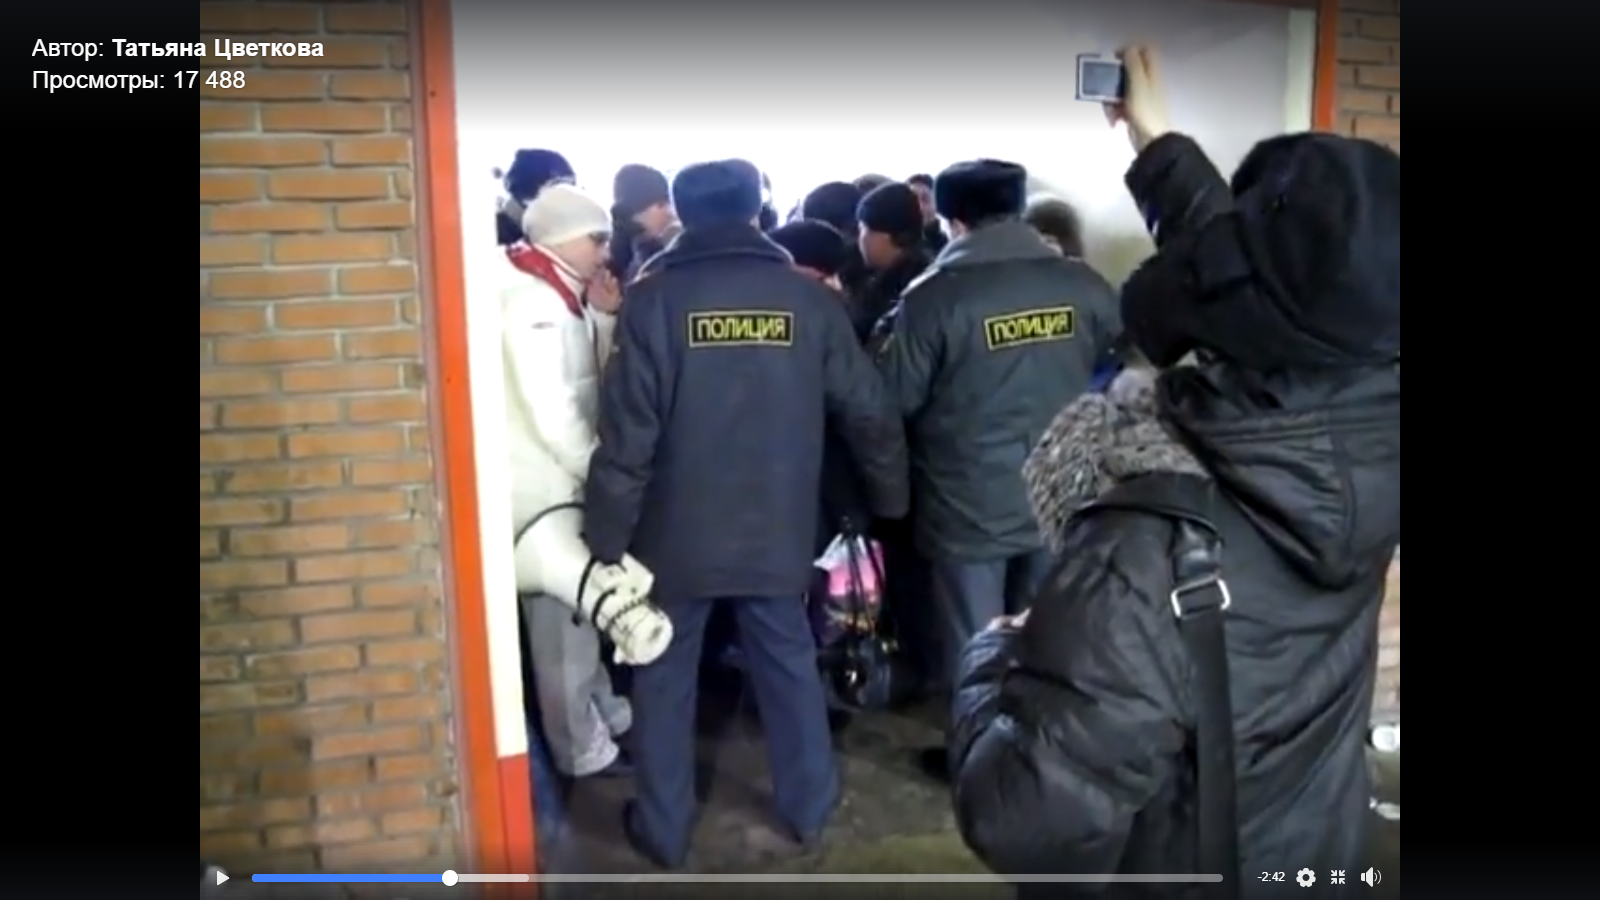 Видео: полиция не выпускает со стадиона участников митинга в Лужниках